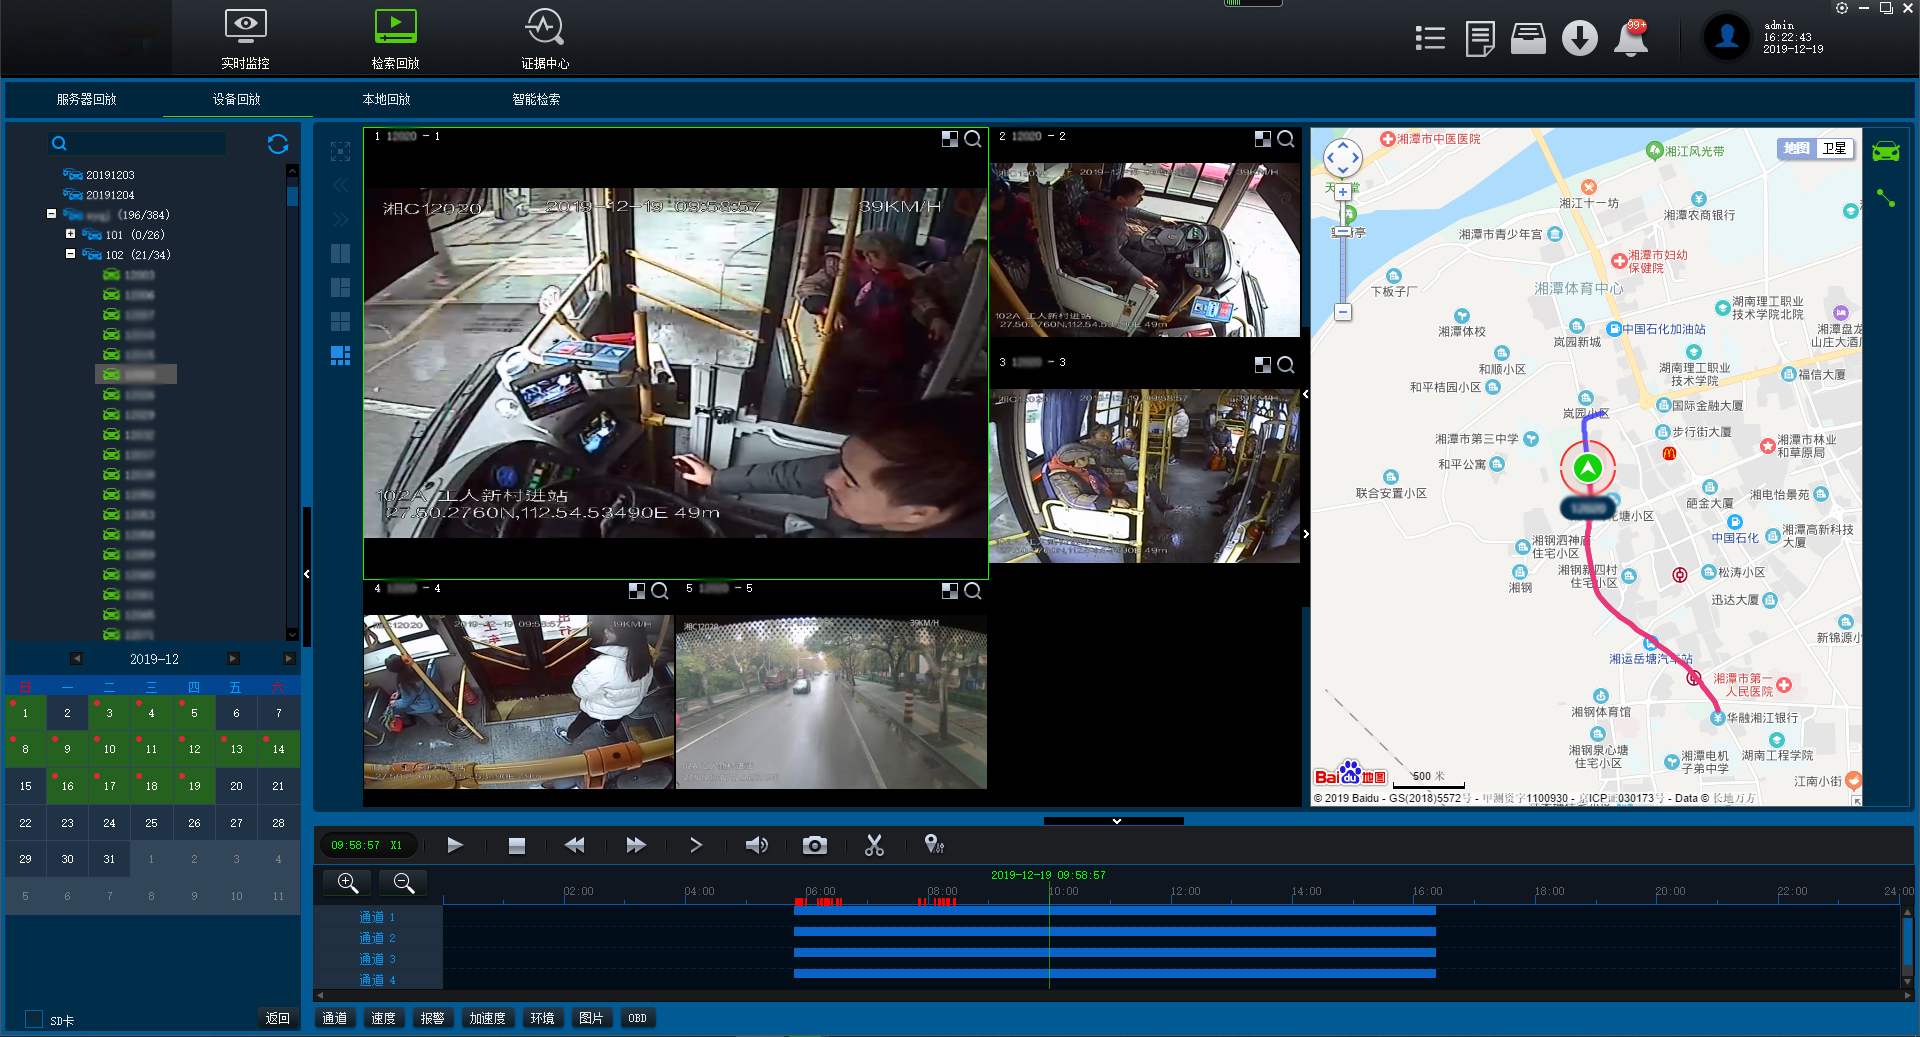 公交车无线移动智能视频监控系统的实现方案